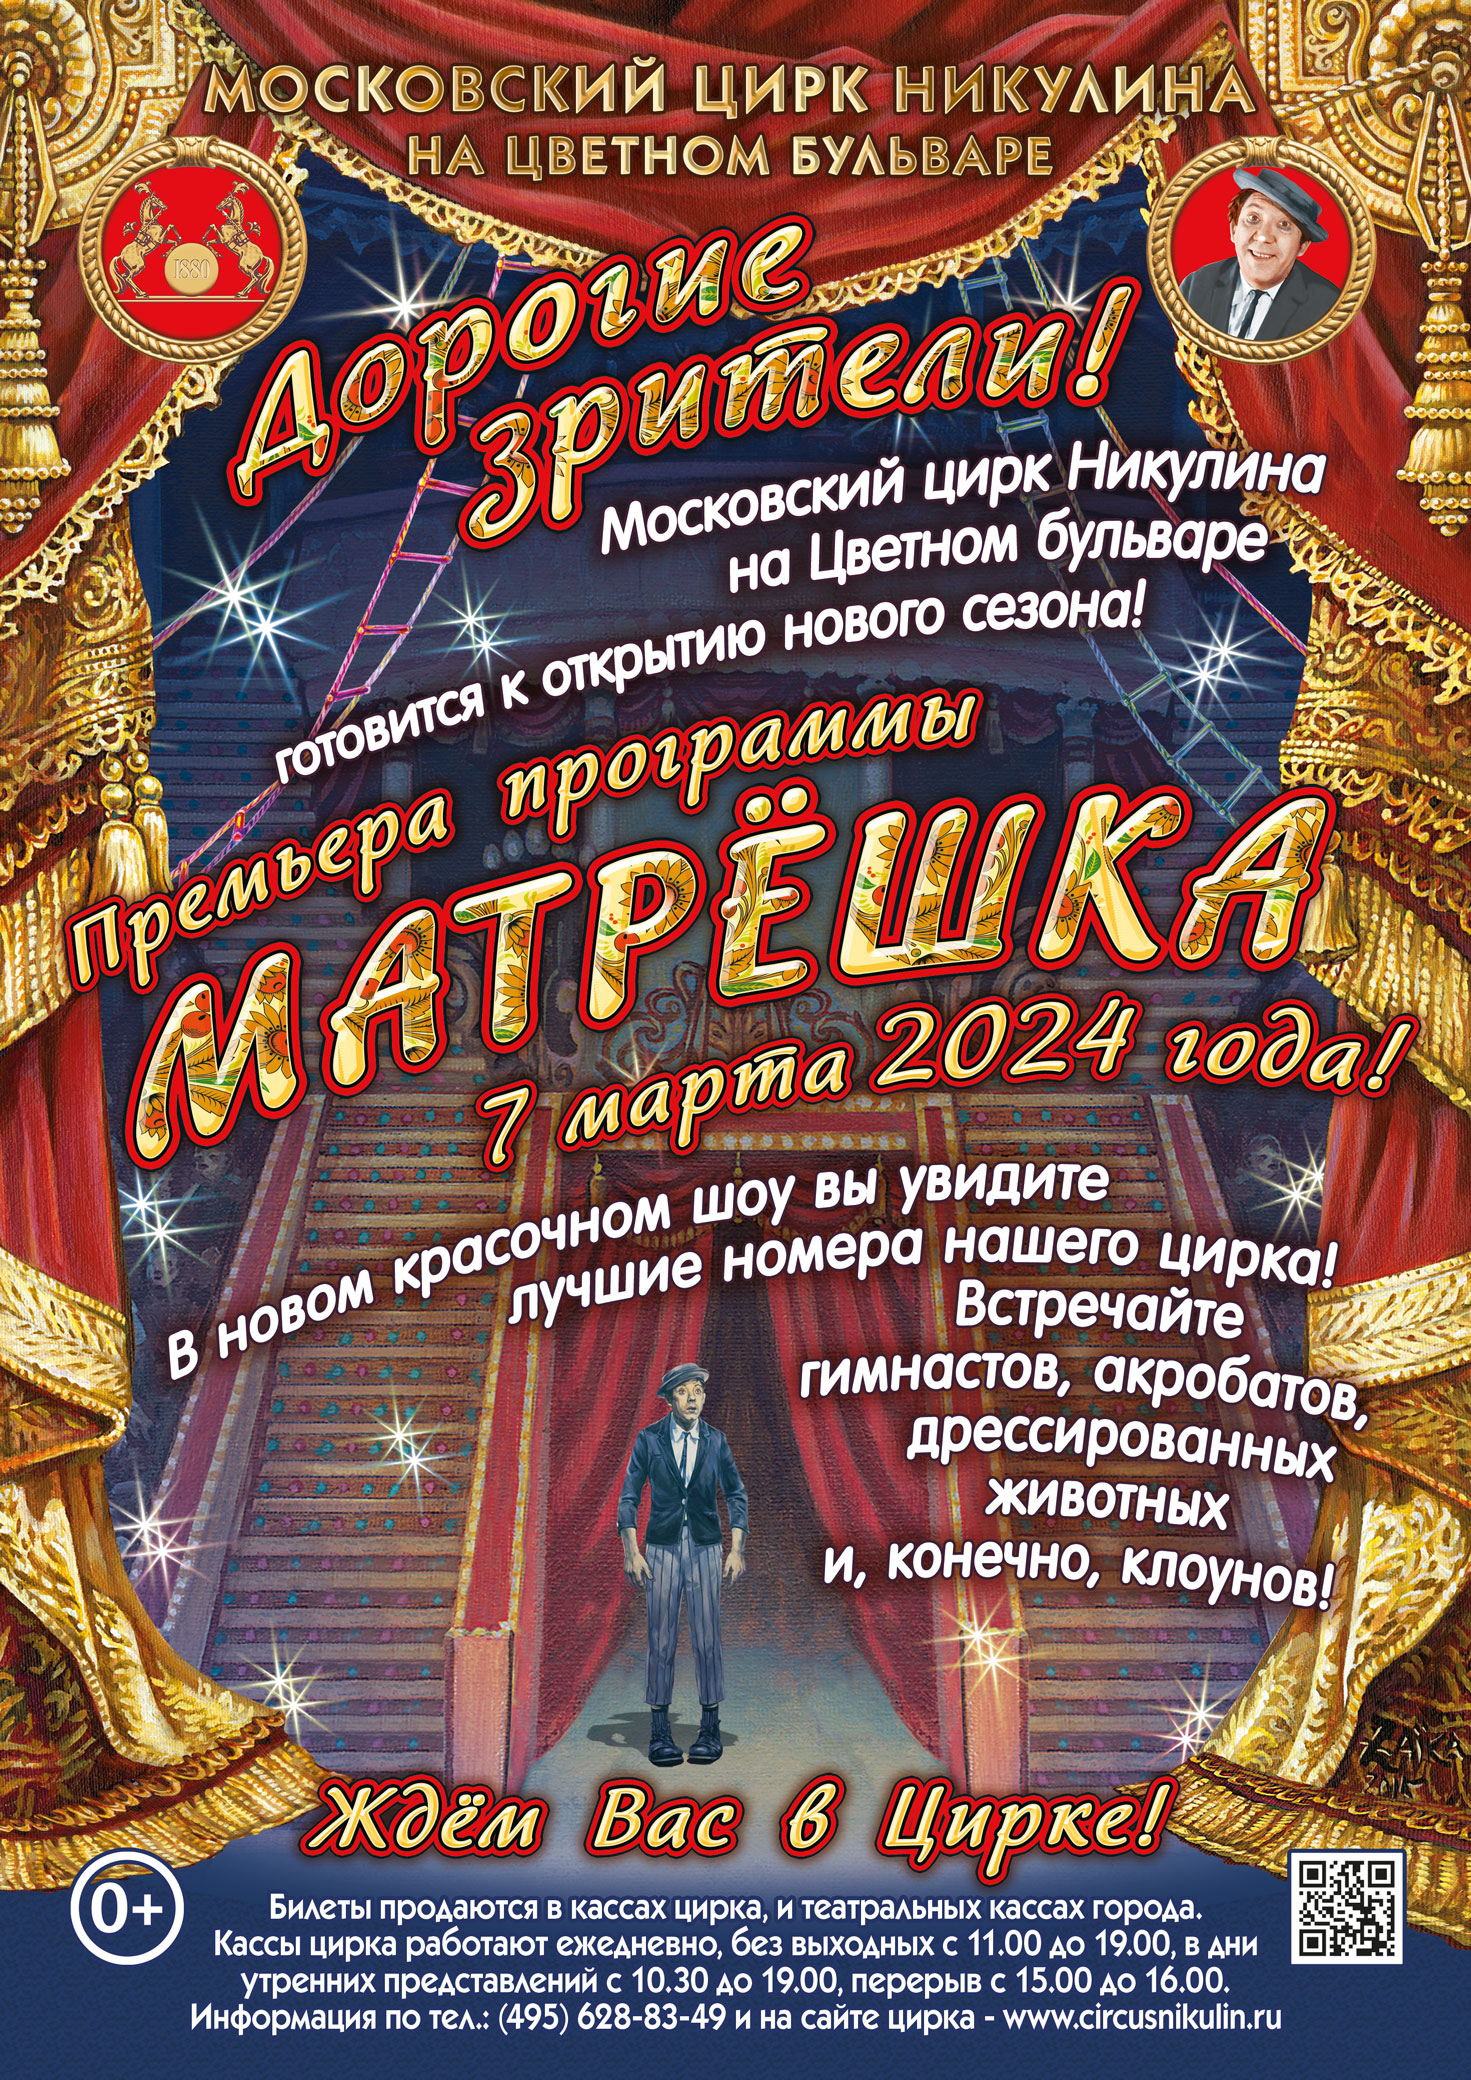 цирки москвы список афиша на билеты